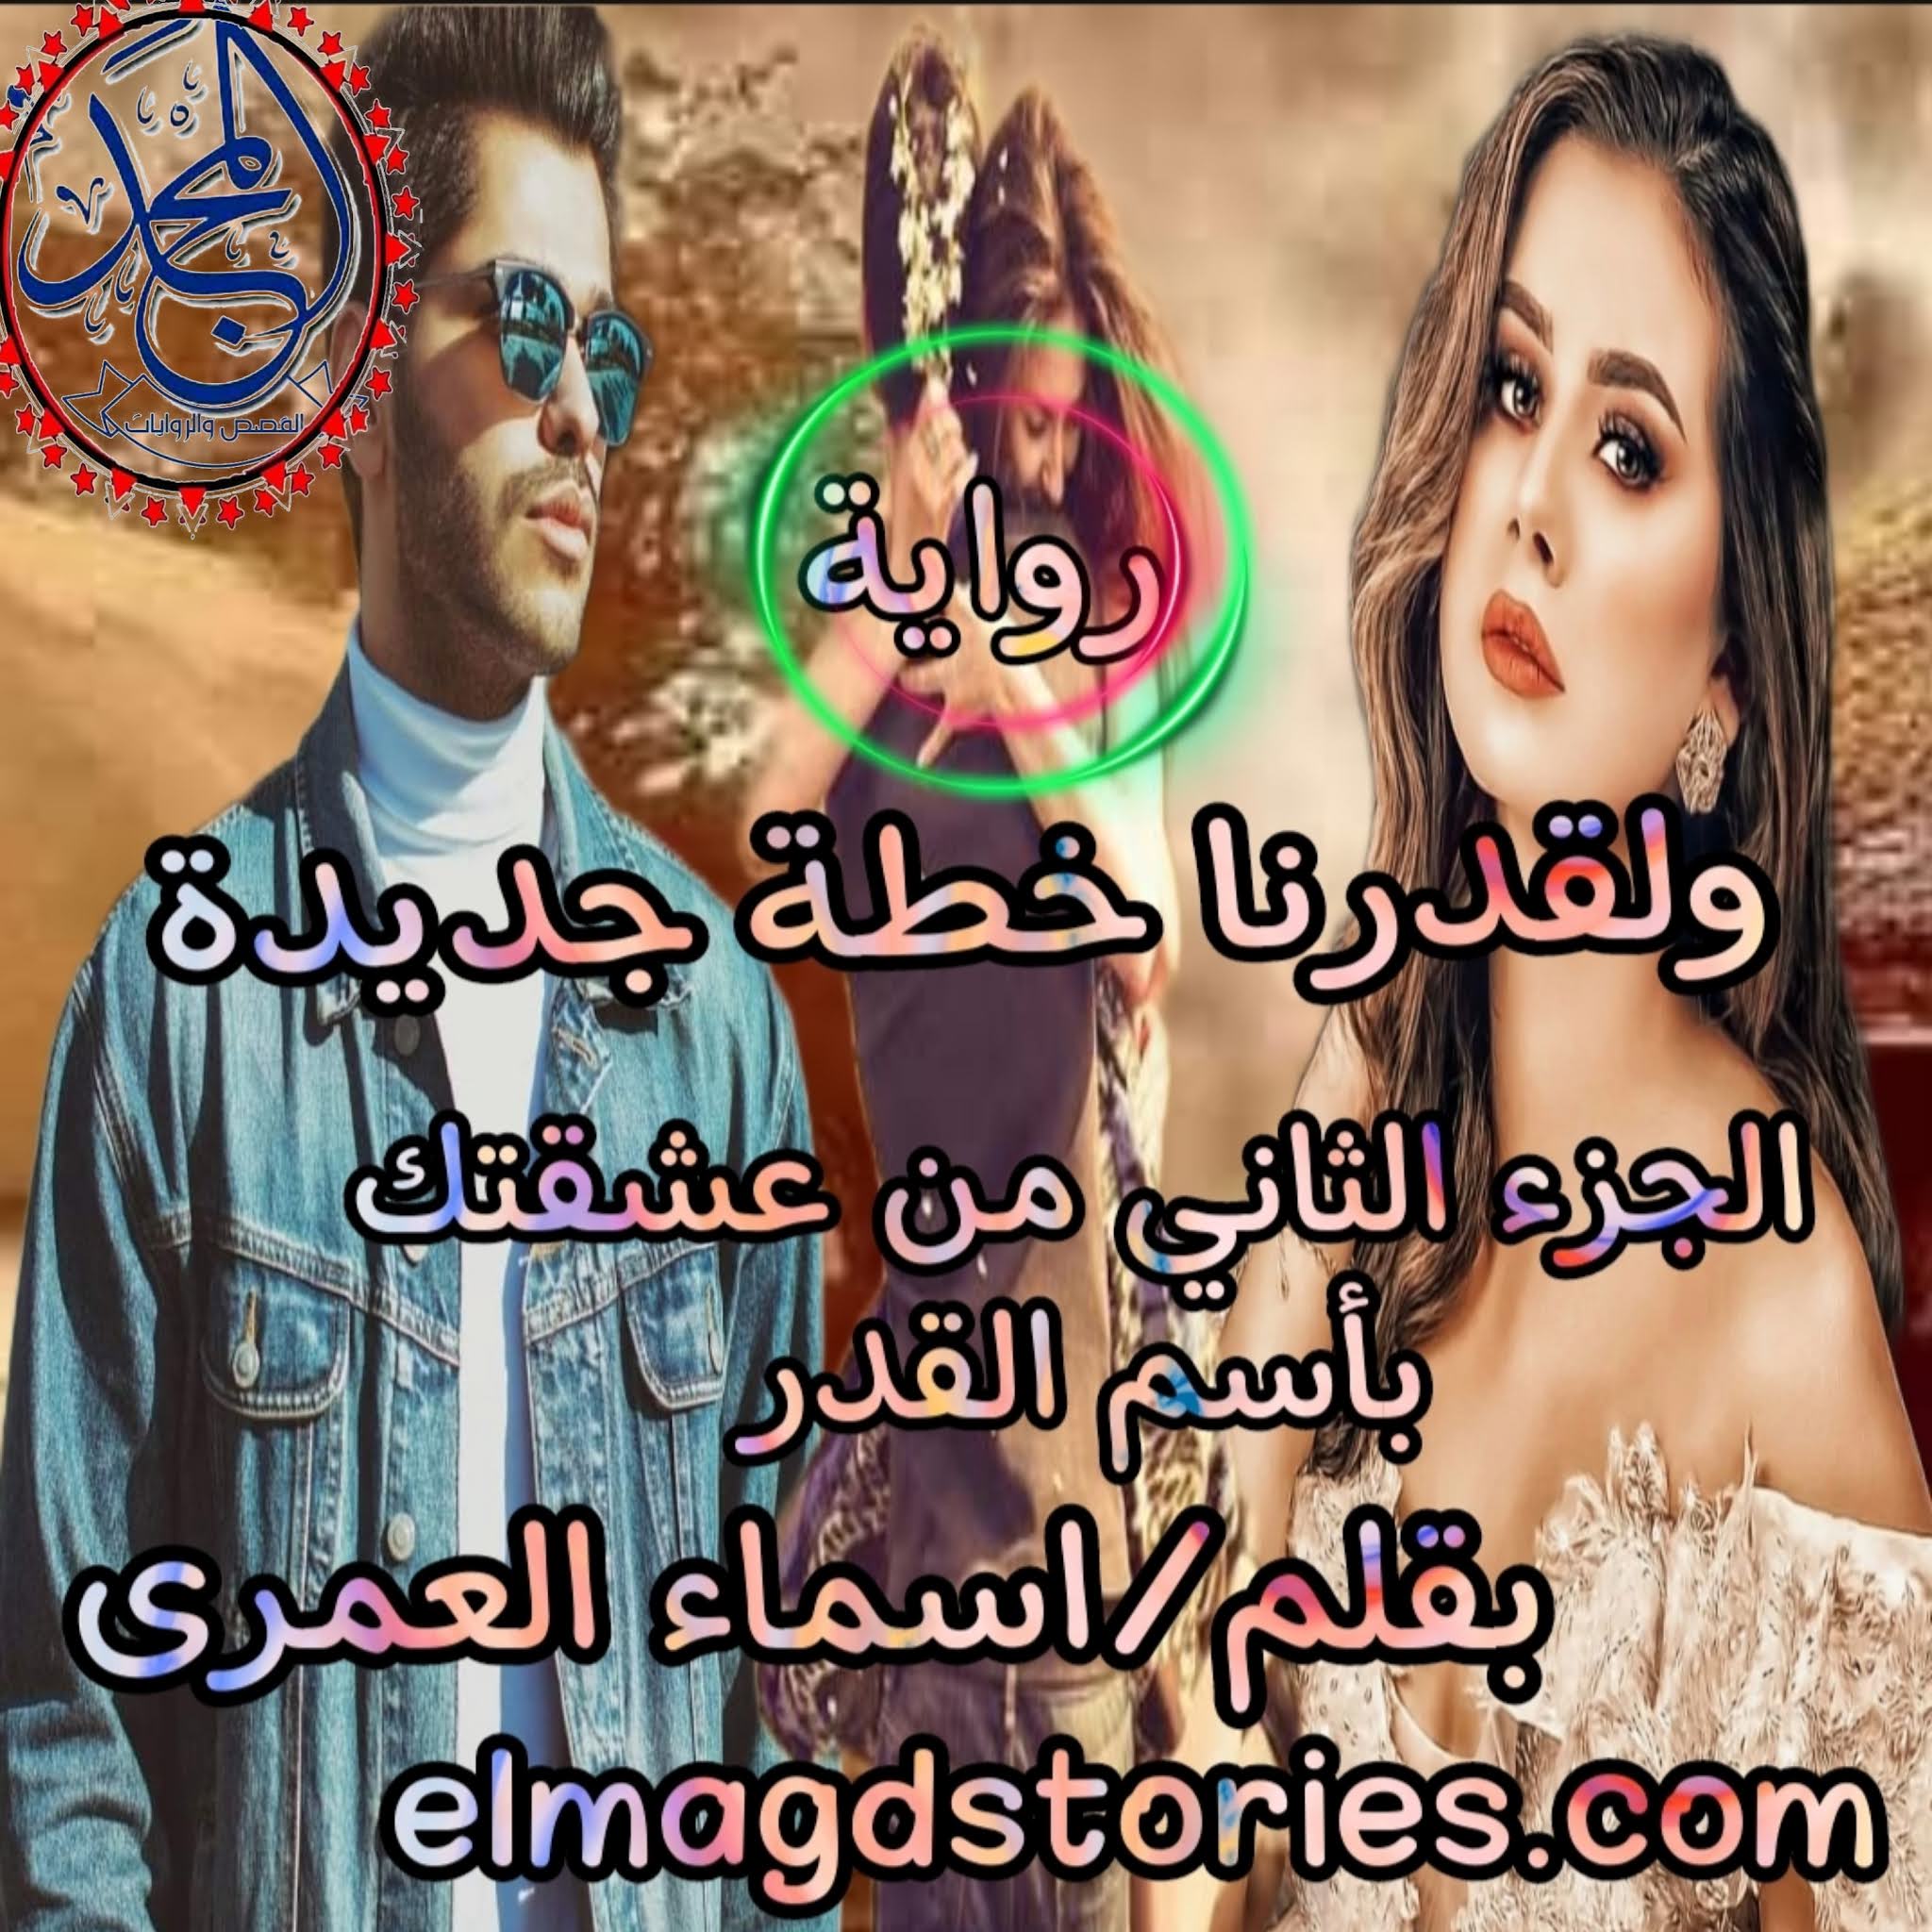 رواية و لقدرنا خطة جديدة الكاتبه اسماء العمري الجزاء الثاني من عشقتك باسم القدر    الفصل الأول